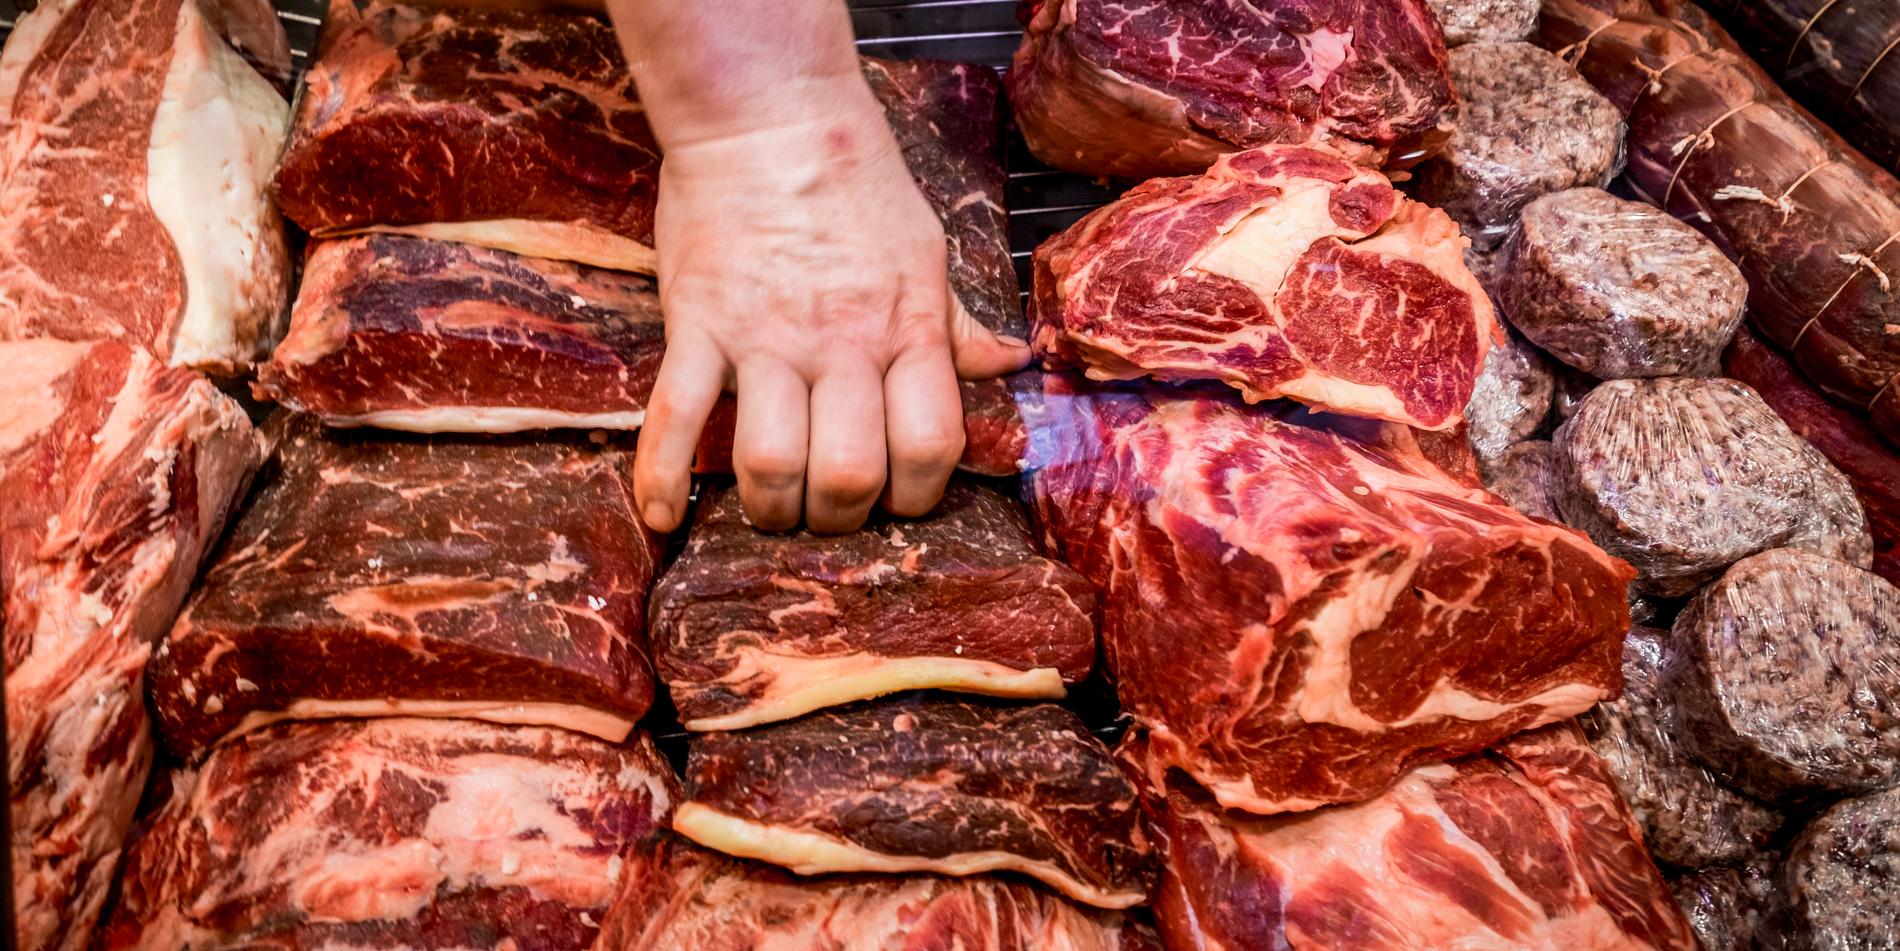 Enligt en granskning som Sveriges konsumenter gjort - då 15 restauranger i Luleå besöktes - hade endast en restaurang uppgifter om var köttet som serverades kom ifrån. 